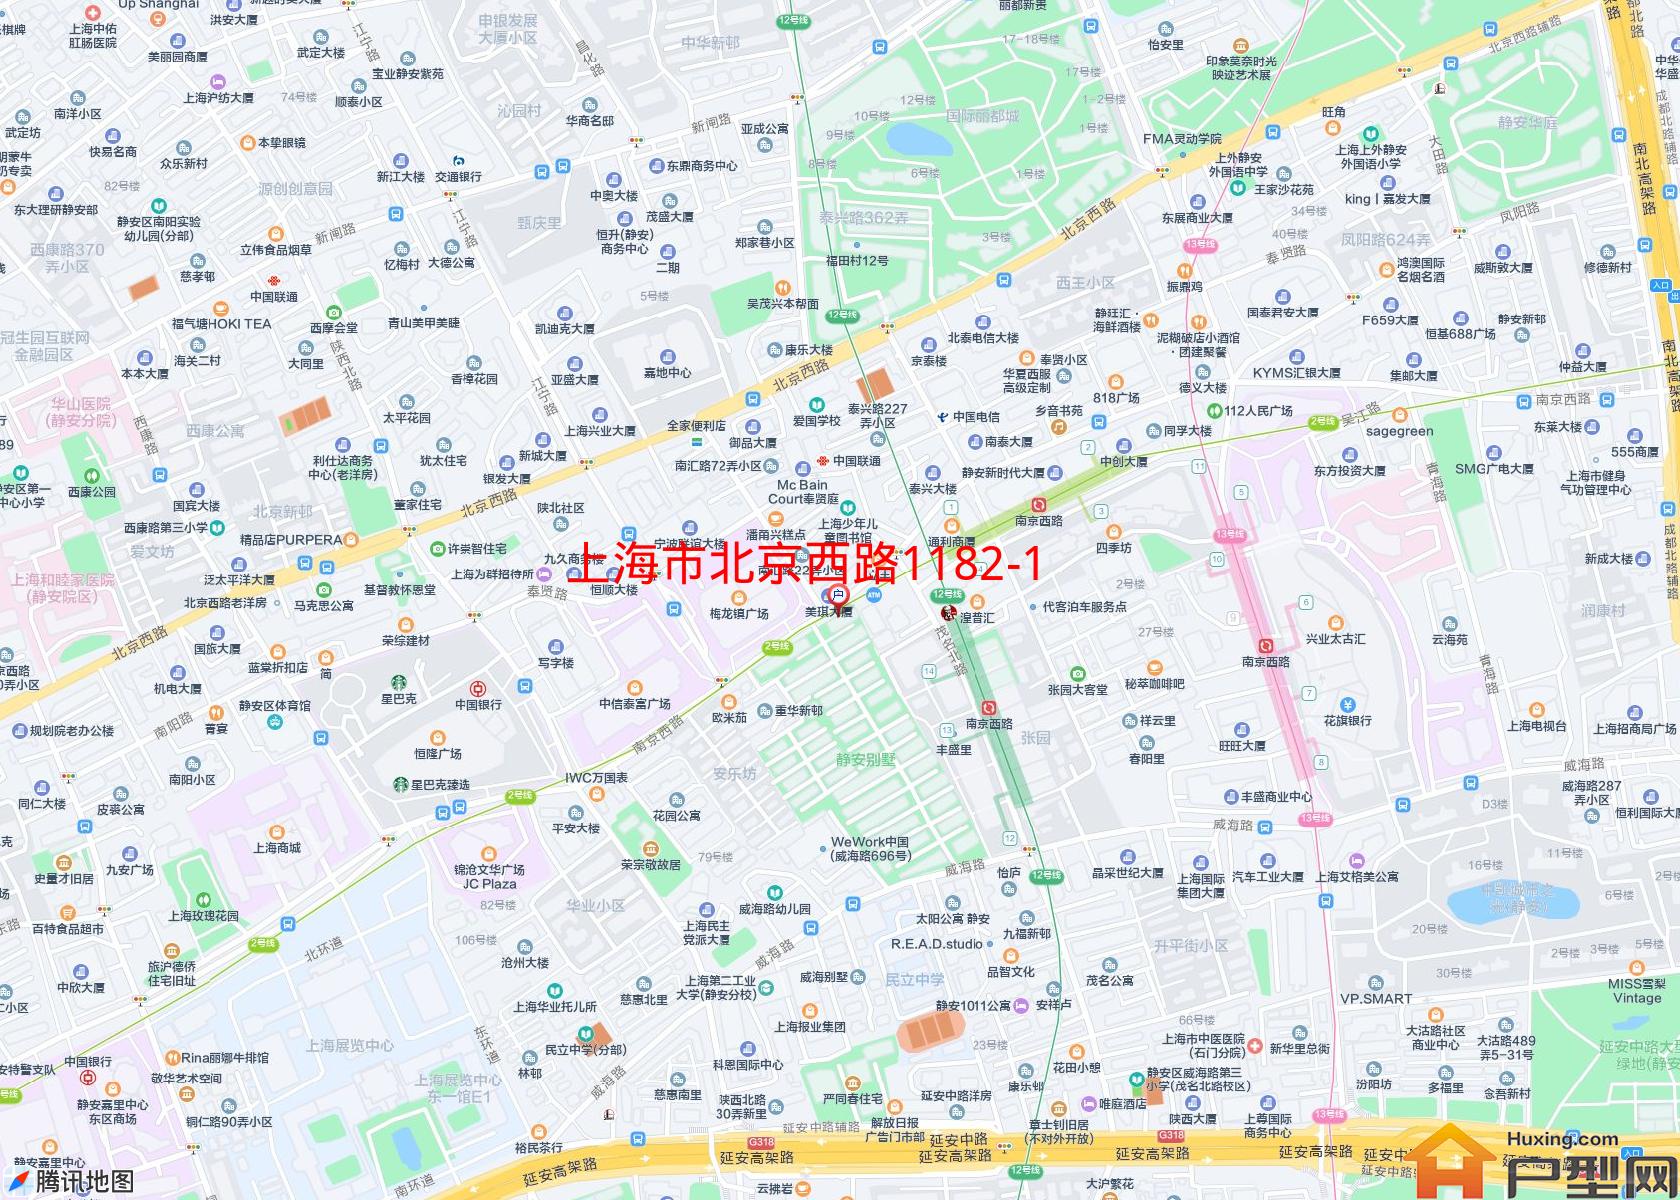 北京西路1182-1198号小区 - 户型网